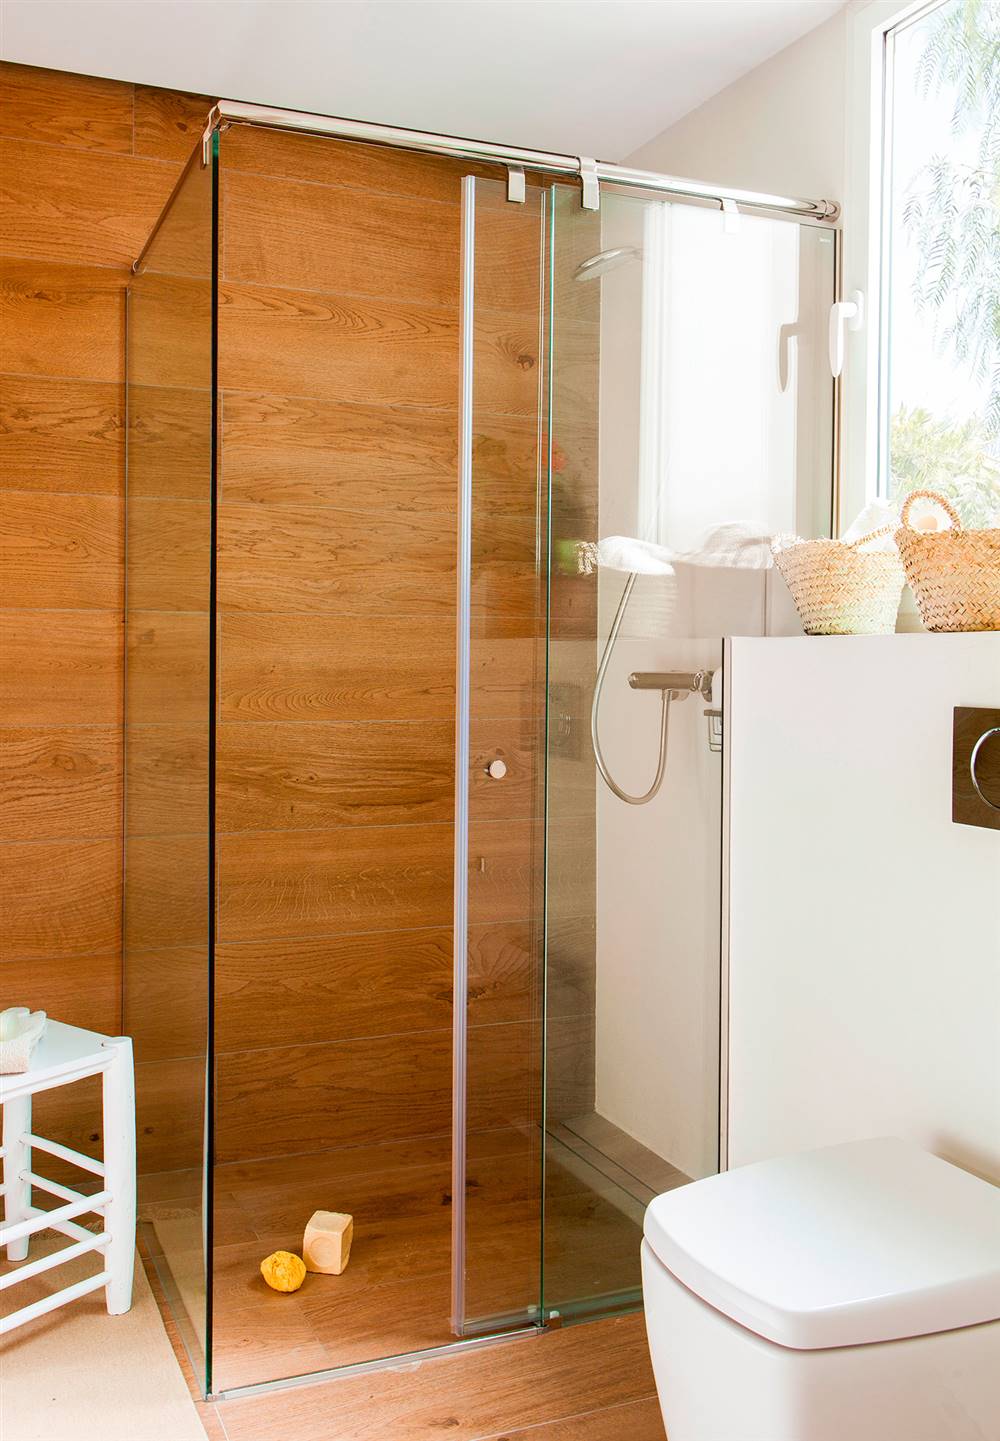 Baño con ducha con mampara corredera de cristal y con suelo y pared revestidas con porcelánico que imita la madera